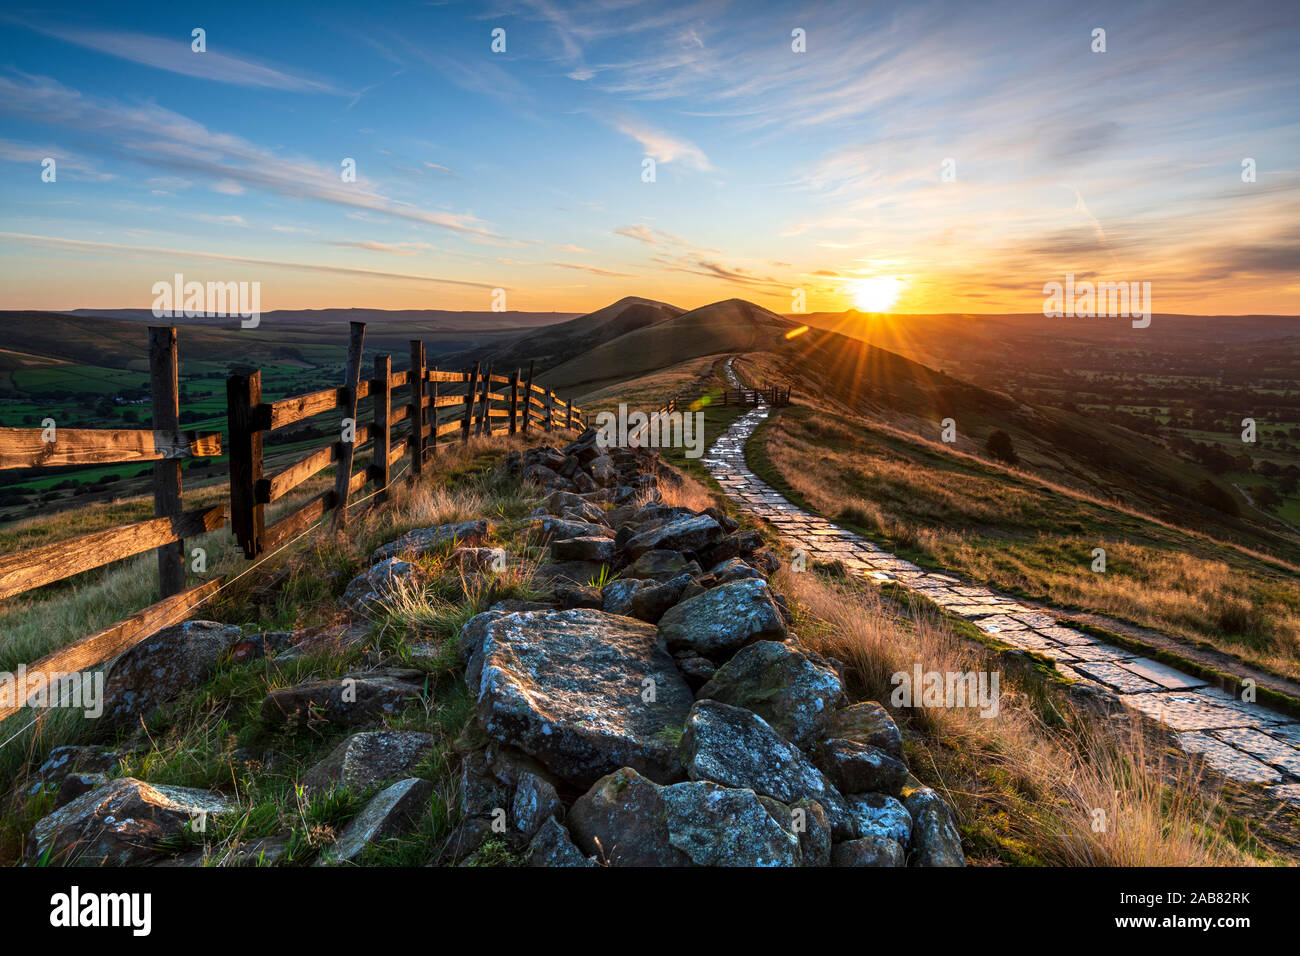 Sonnenaufgang über Hügel verlieren und Zurück, Tor von Mam Tor, Hope Valley, Peak District, Derbyshire, England, Vereinigtes Königreich, Europa Stockfoto